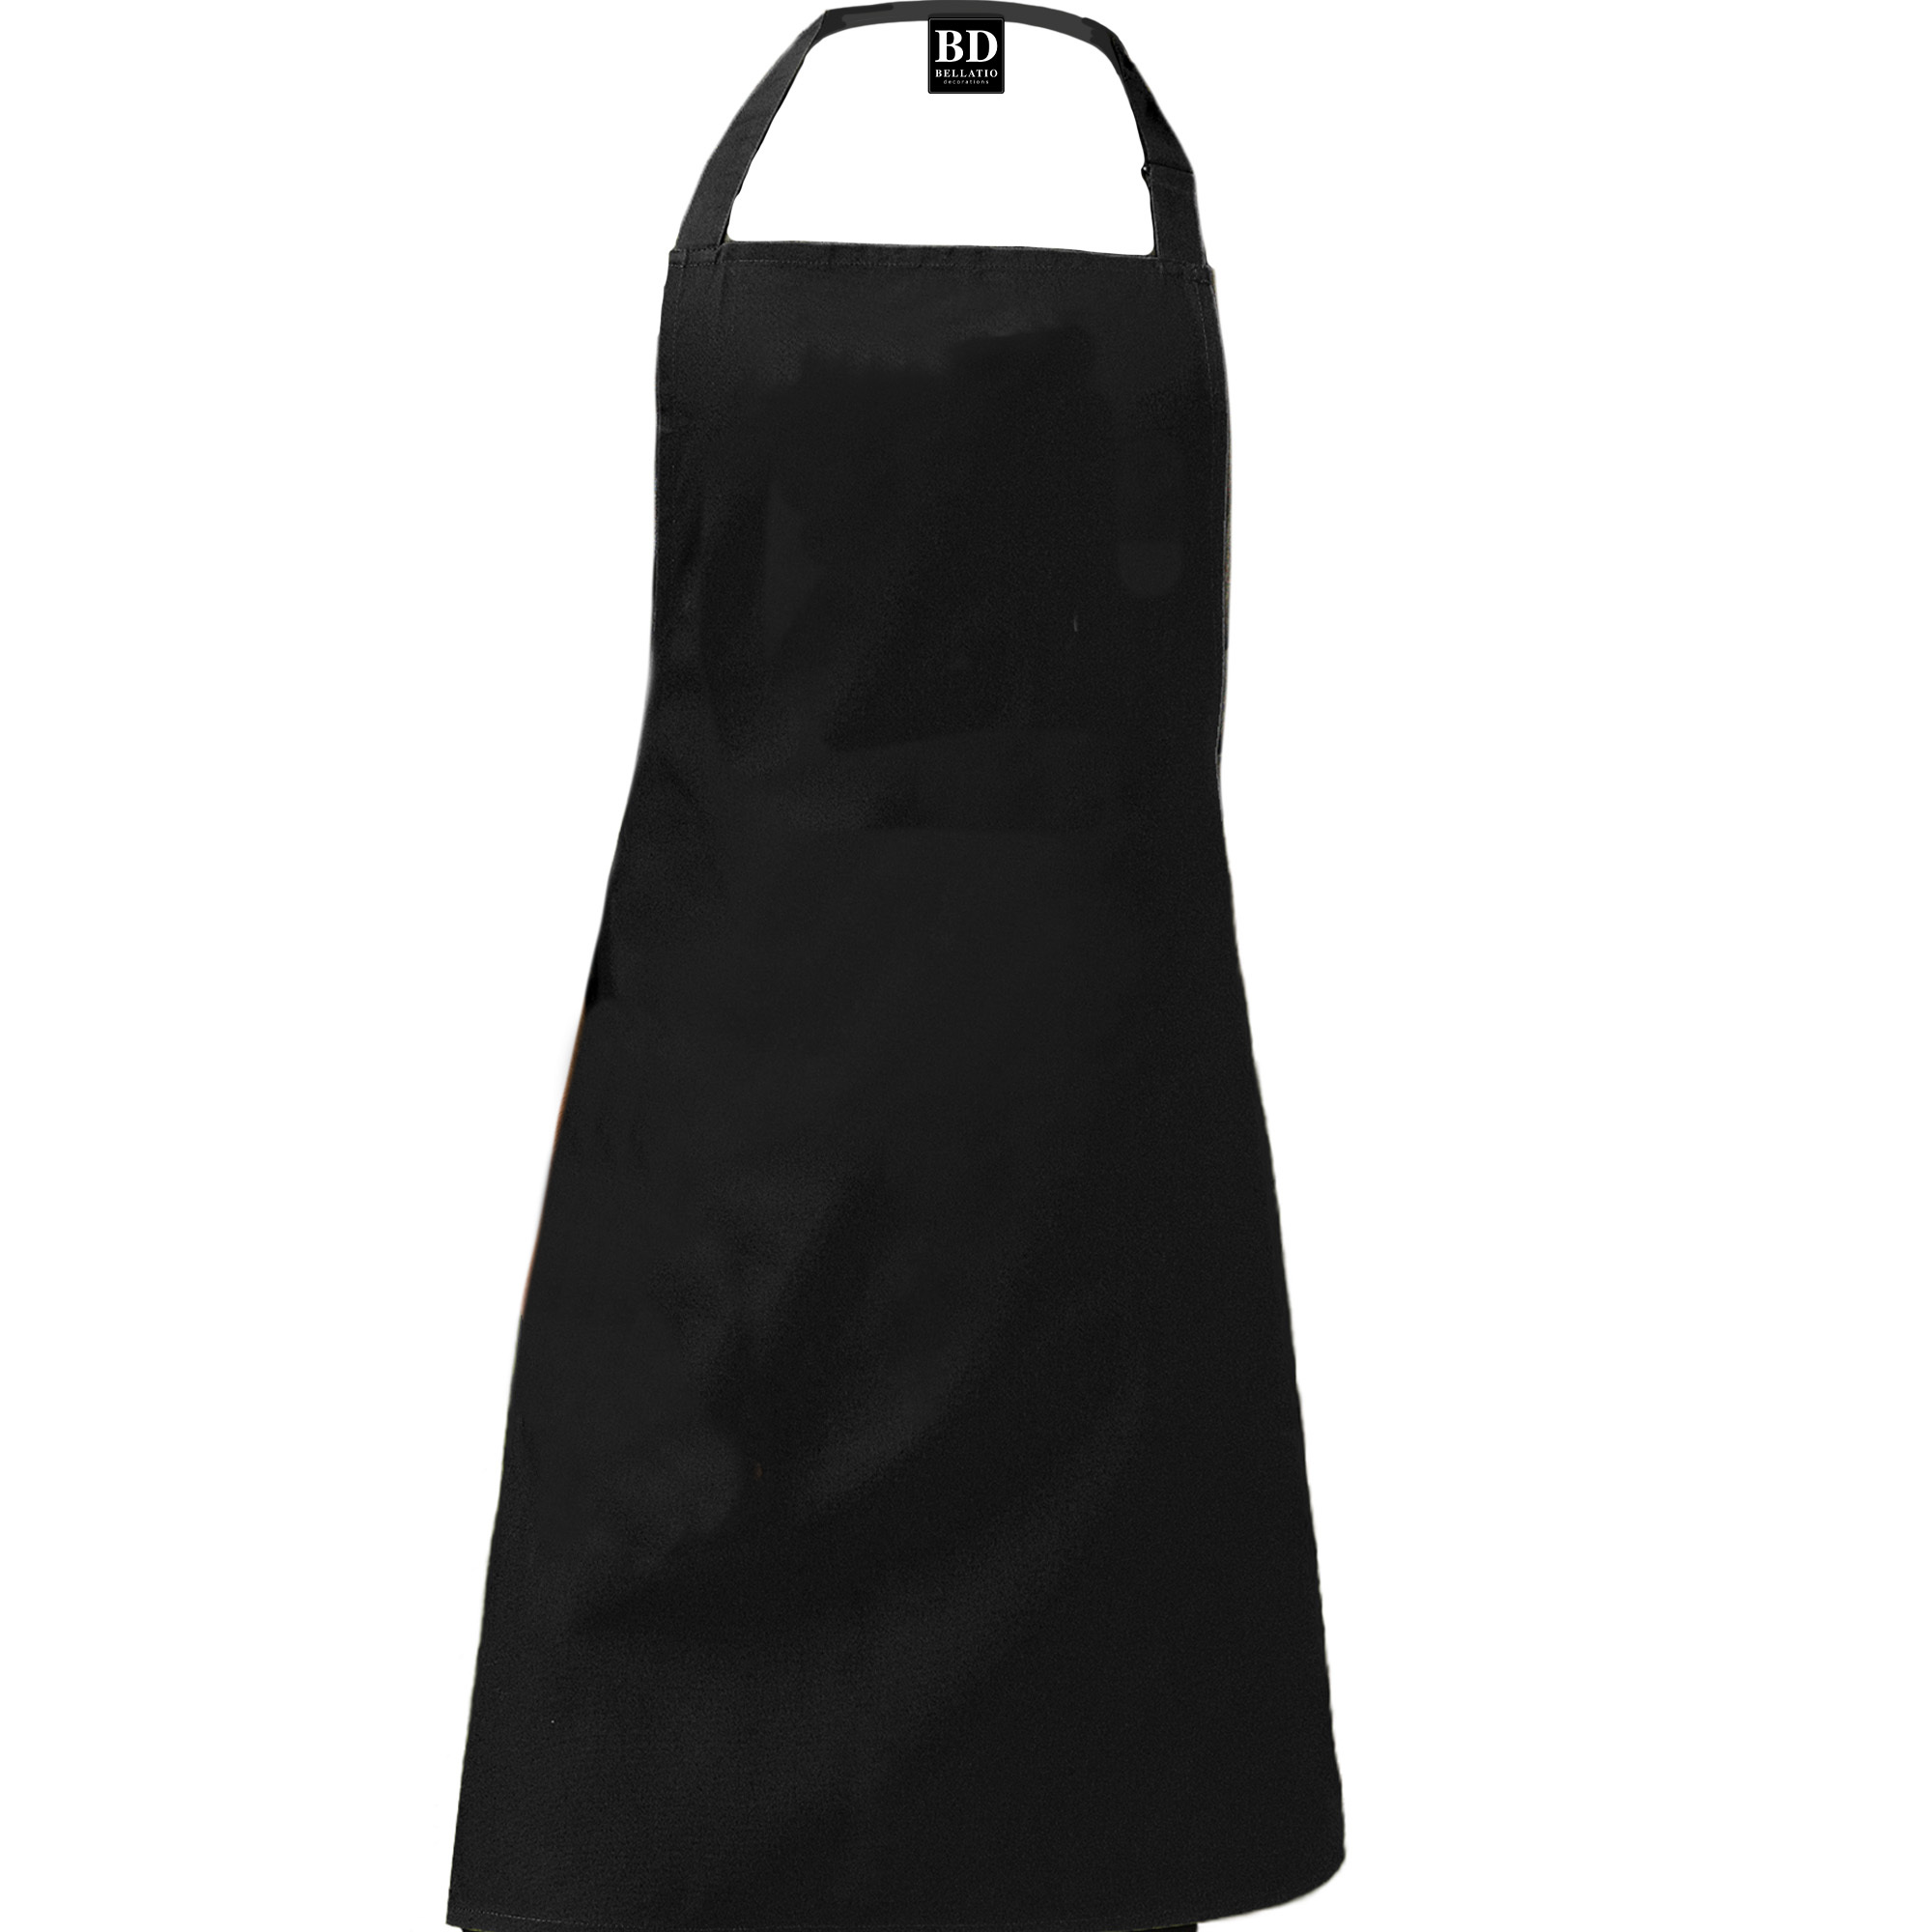 Queen of the kitchen Dora keukenschort/ barbecue schort zwart voor dames